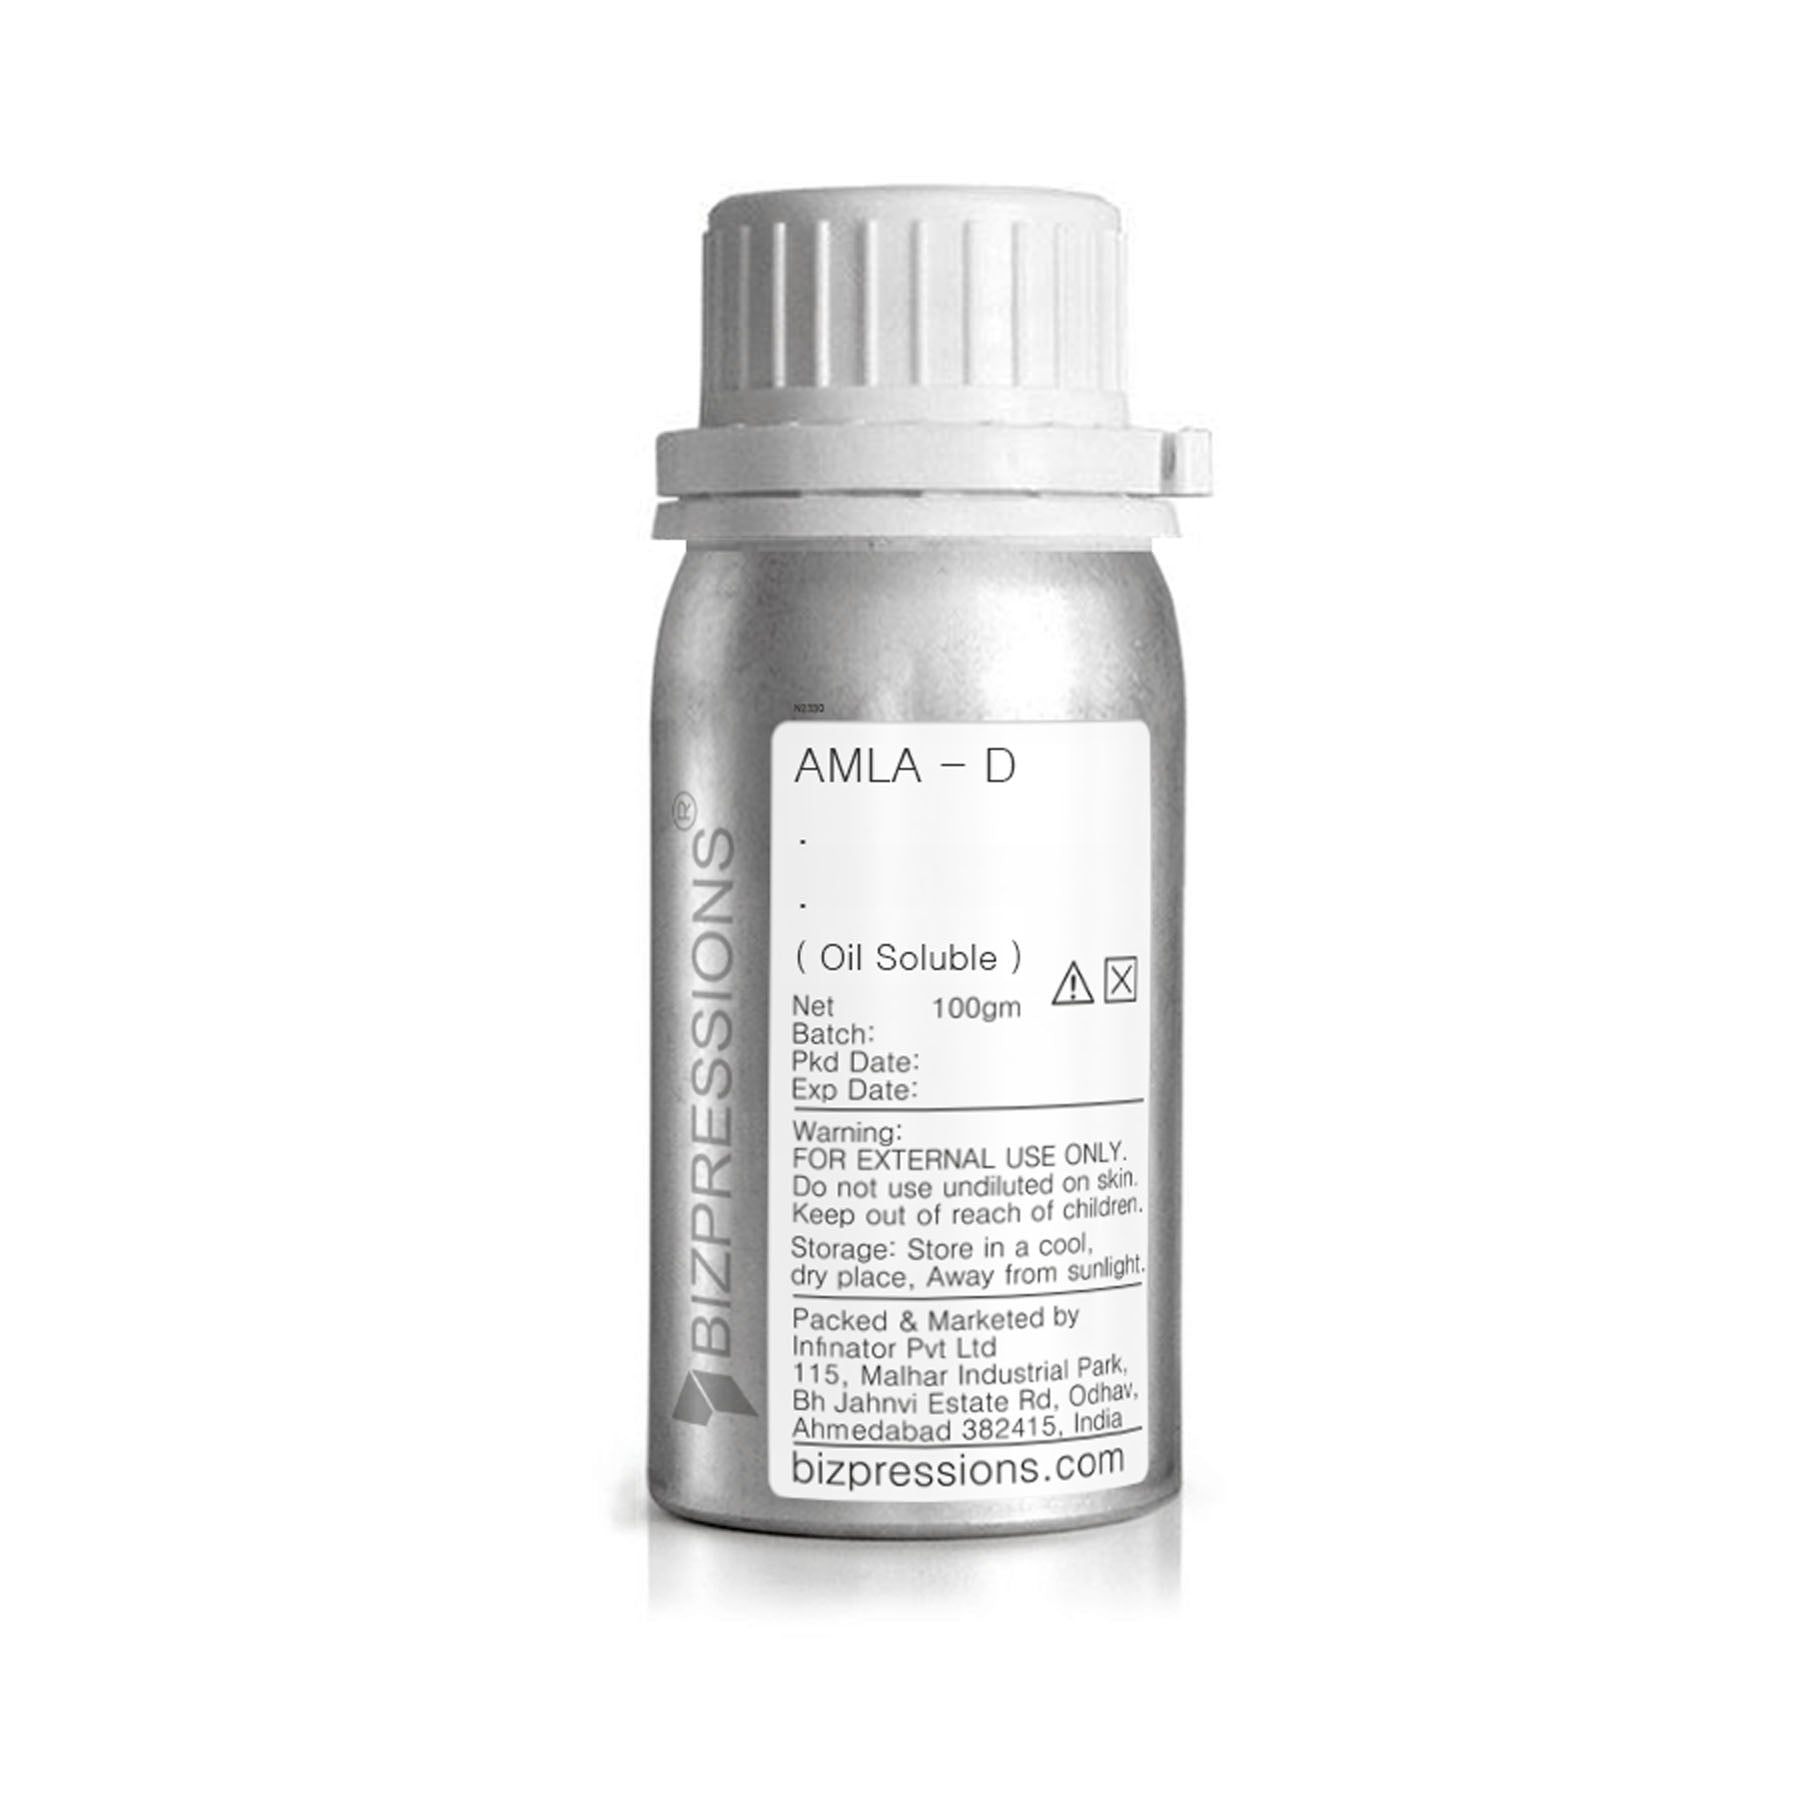 AMLA - D - Fragrance ( Oil Soluble ) - 100 gm